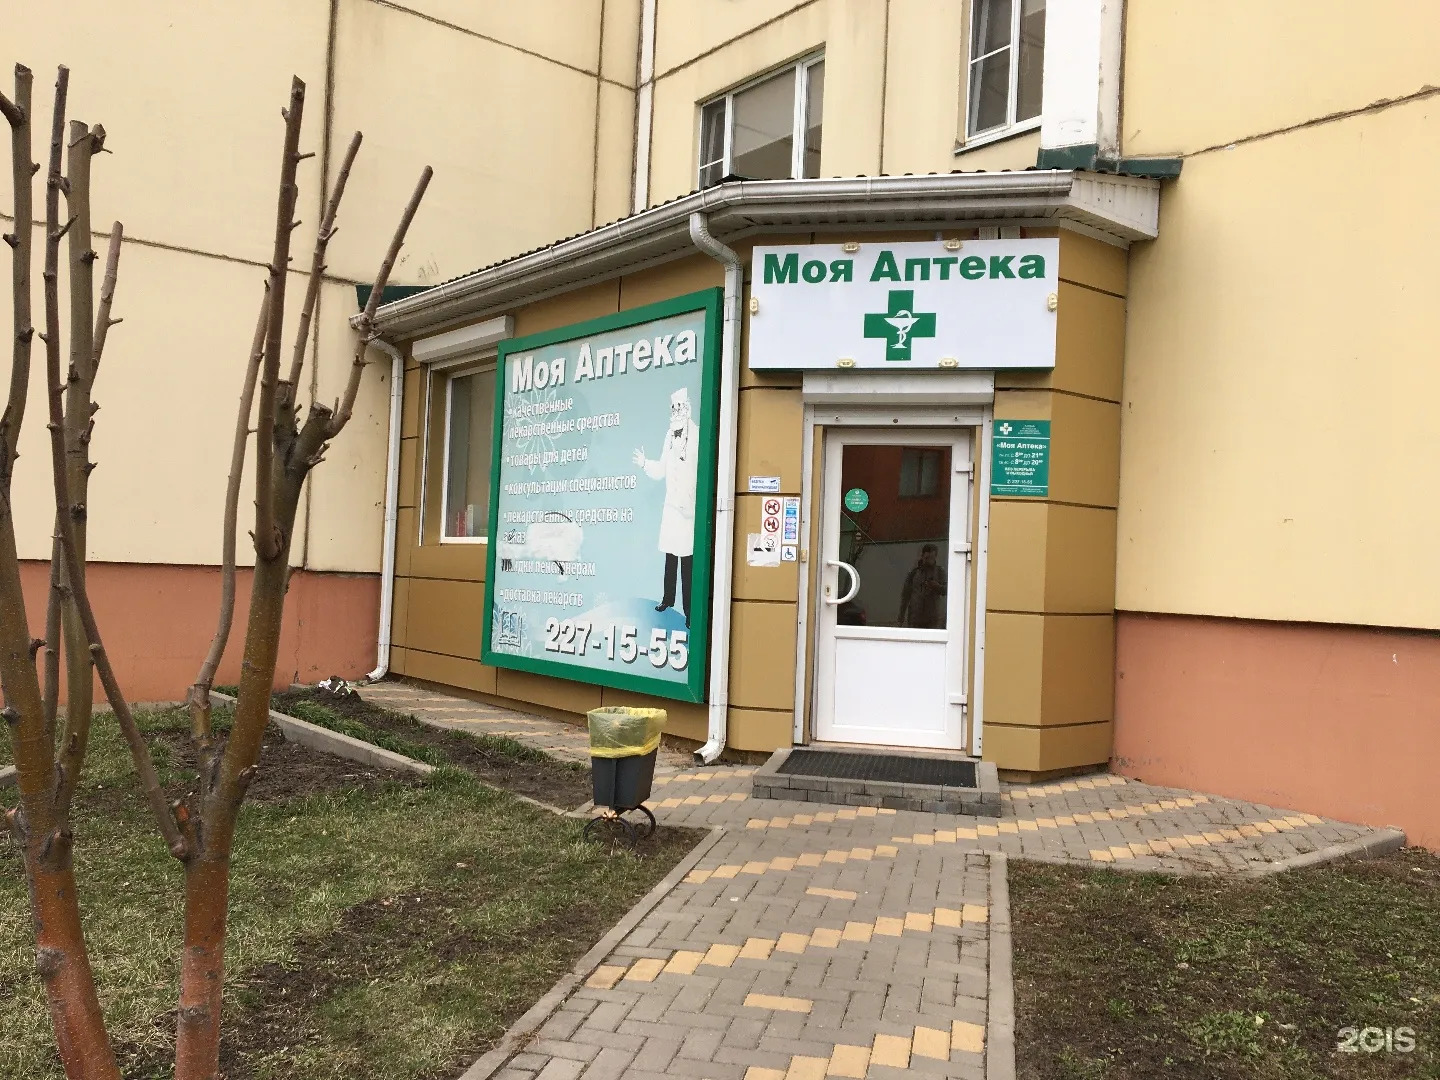 Аптека моя аптека Воронеж